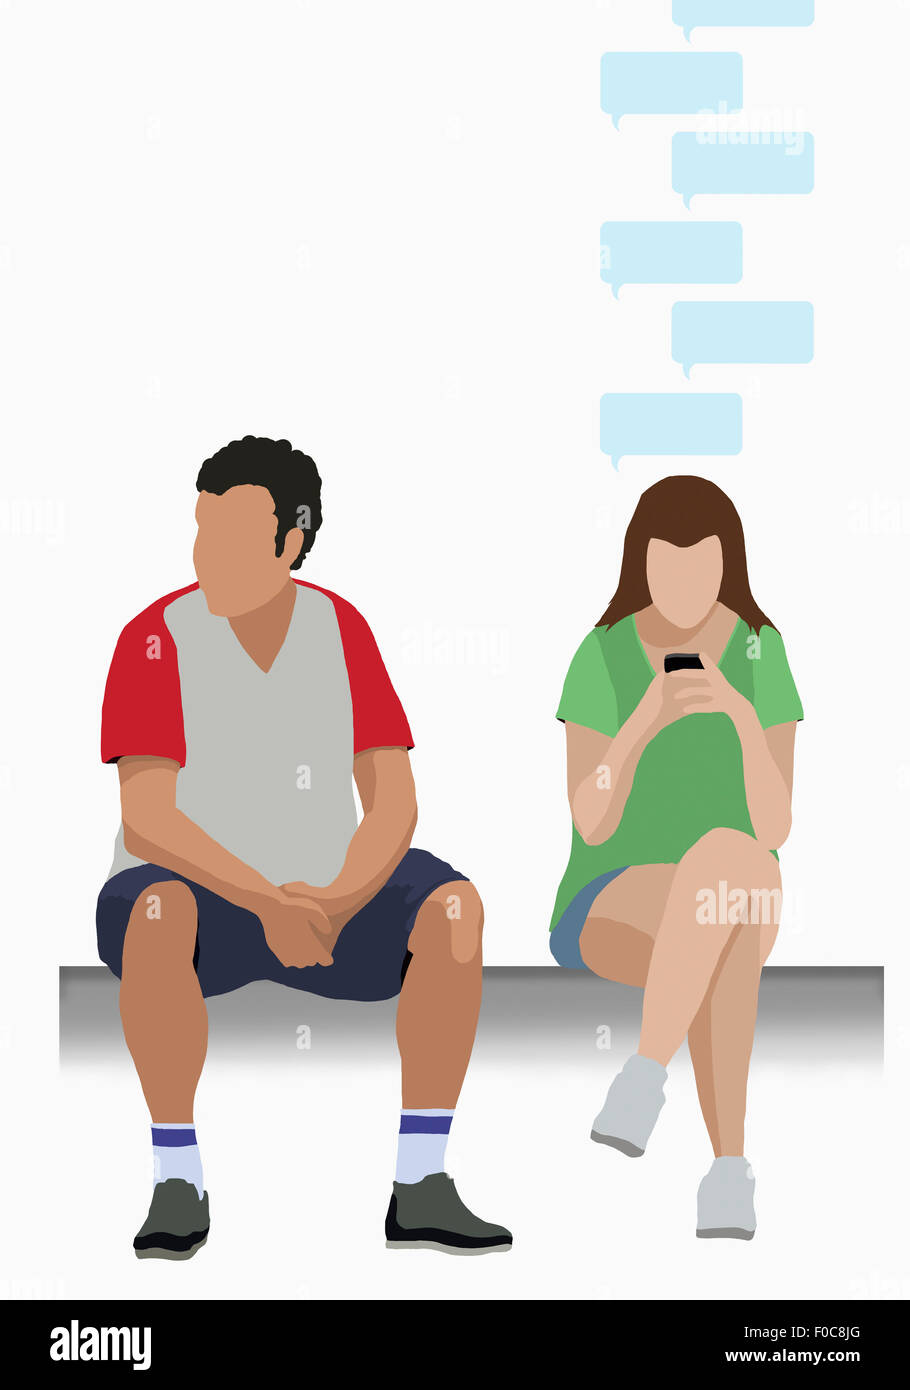 Image d'illustration de l'homme assis par woman using mobile phone Banque D'Images